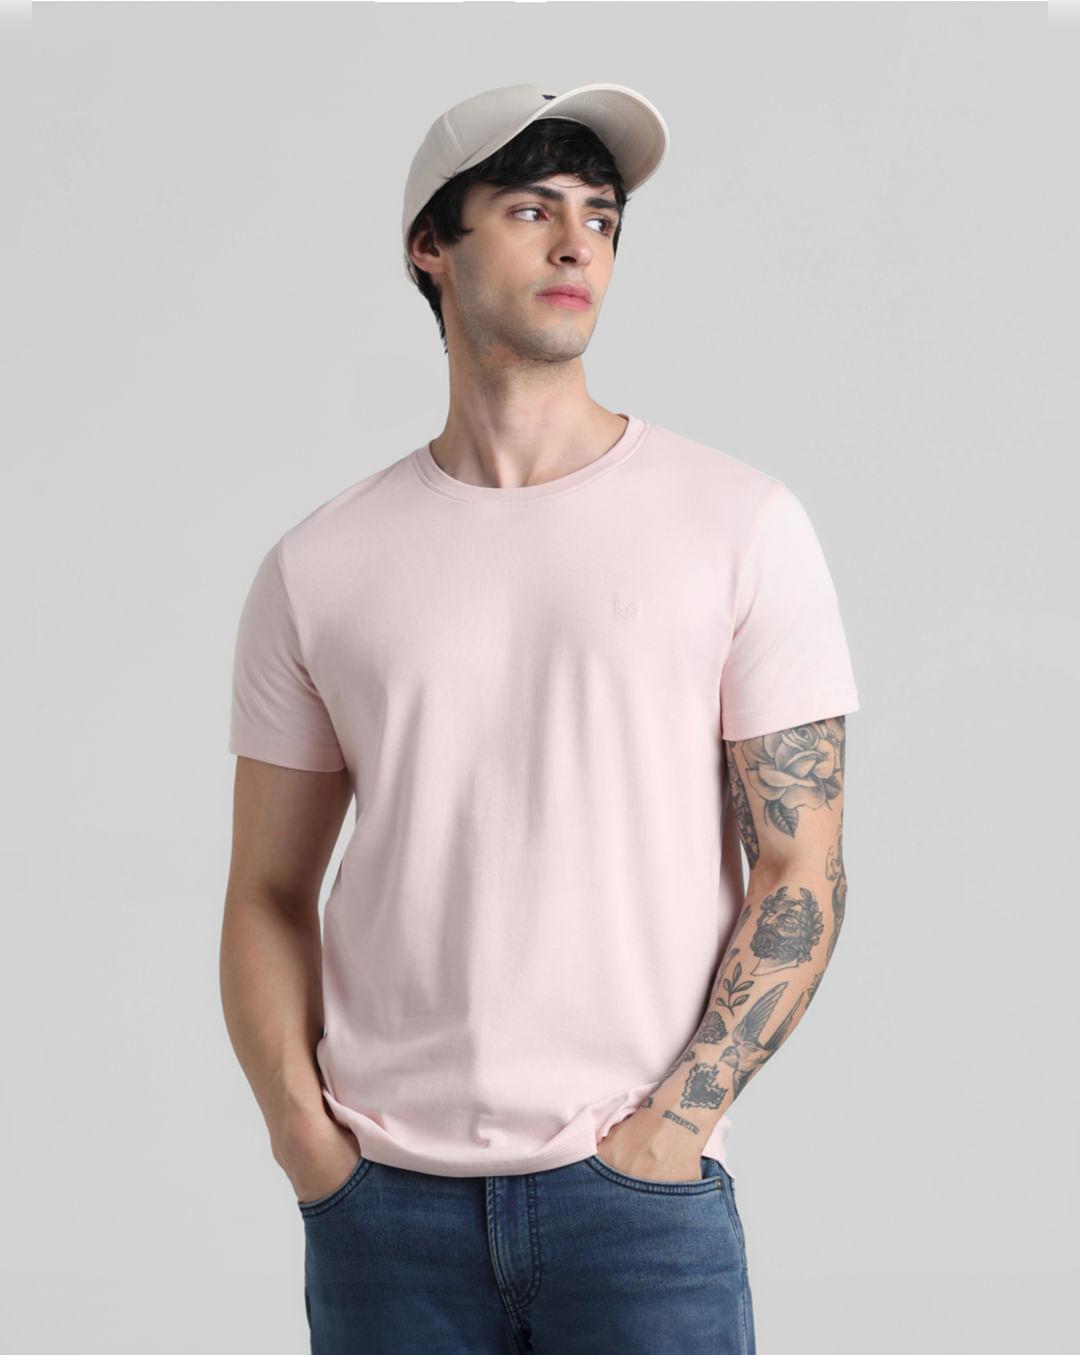 light pink crew neck t-shirt